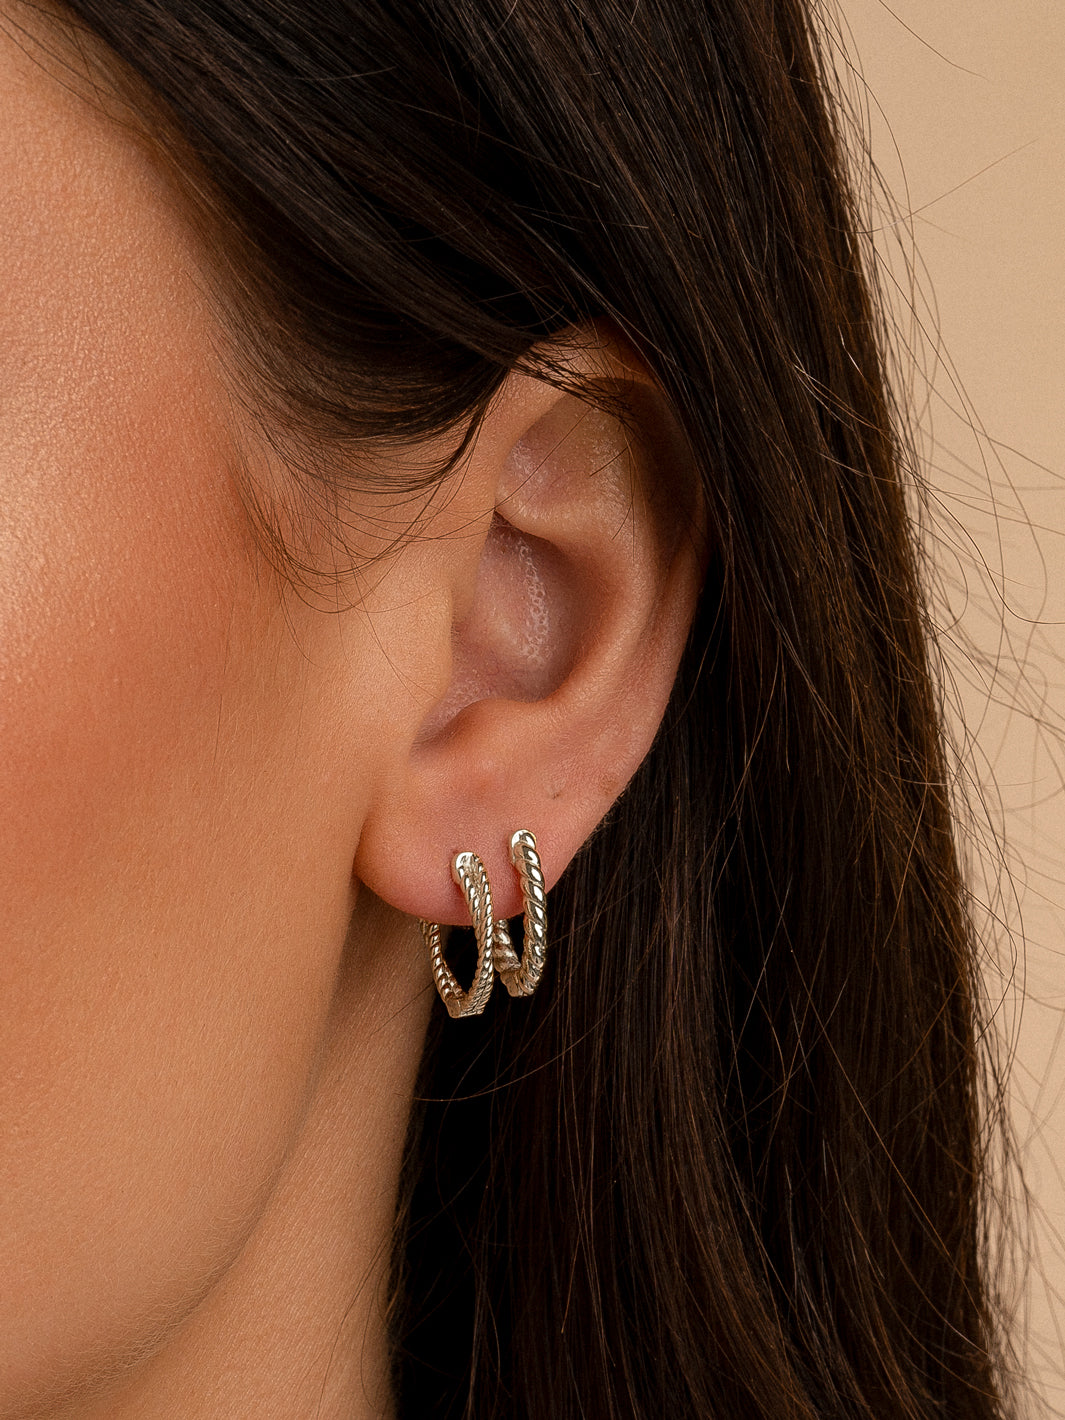 Twist silver earrings